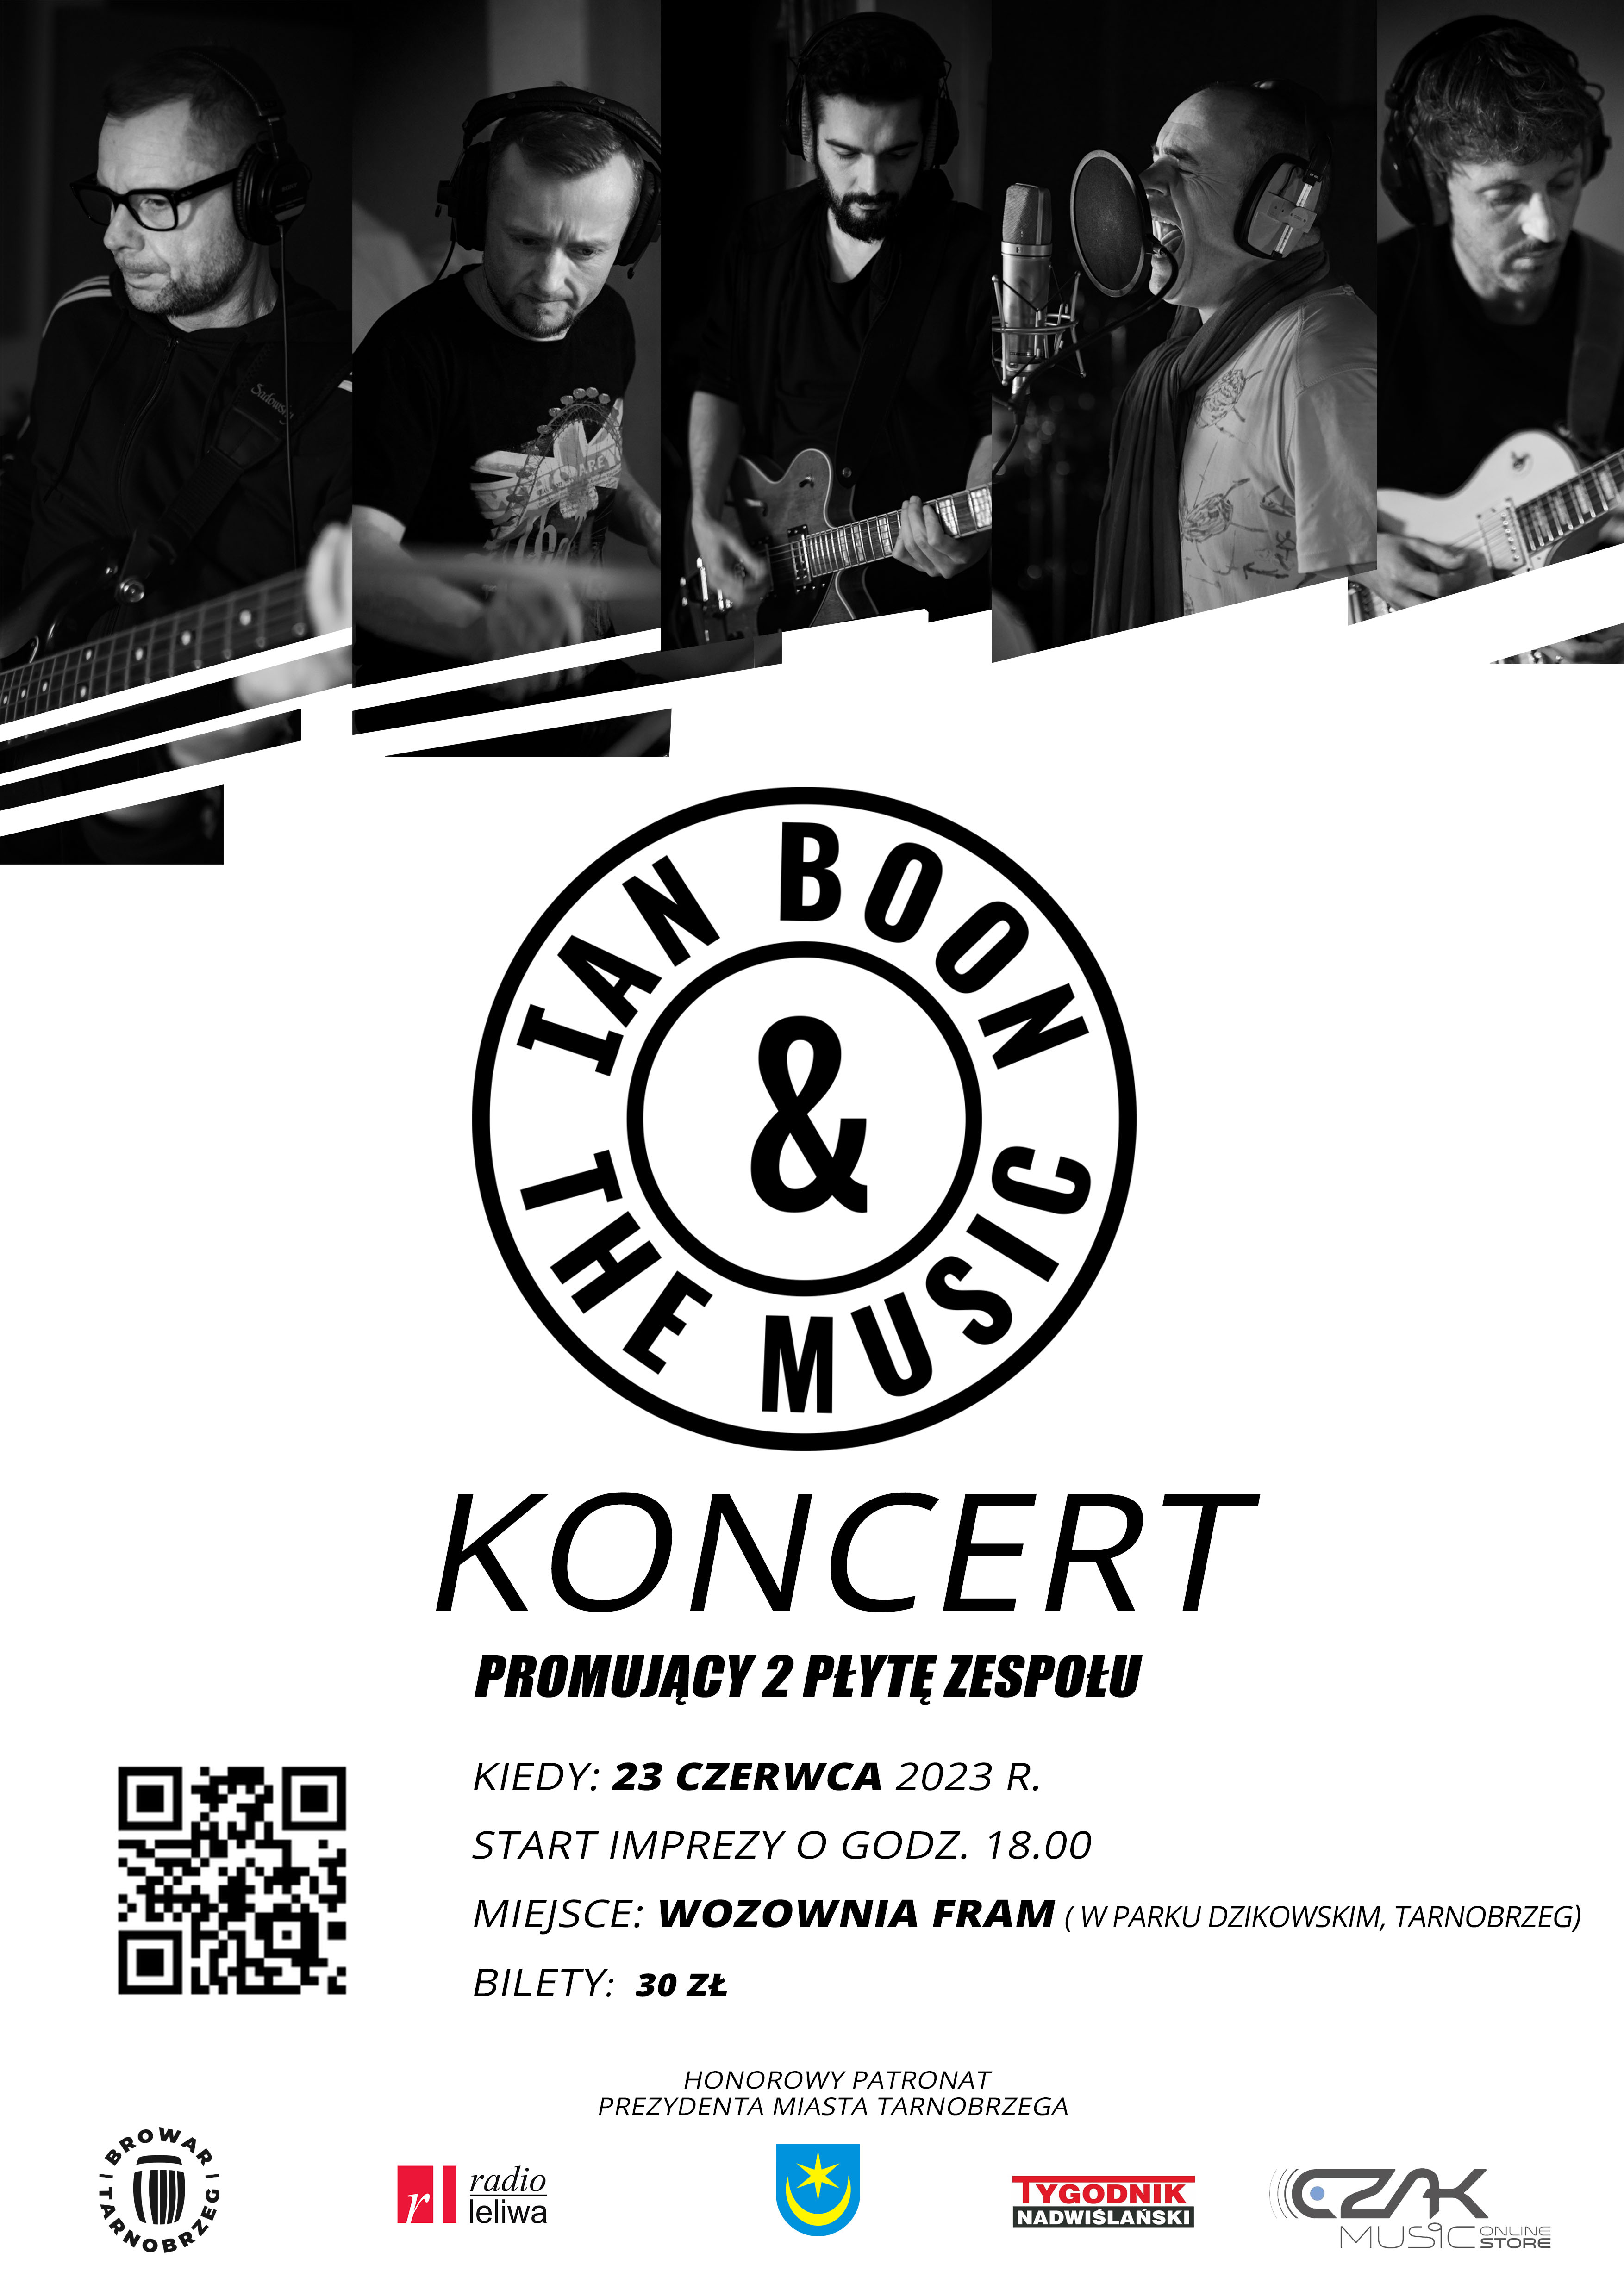 Ian Boon & The Music - Koncert promujący 2 płytę zespołu